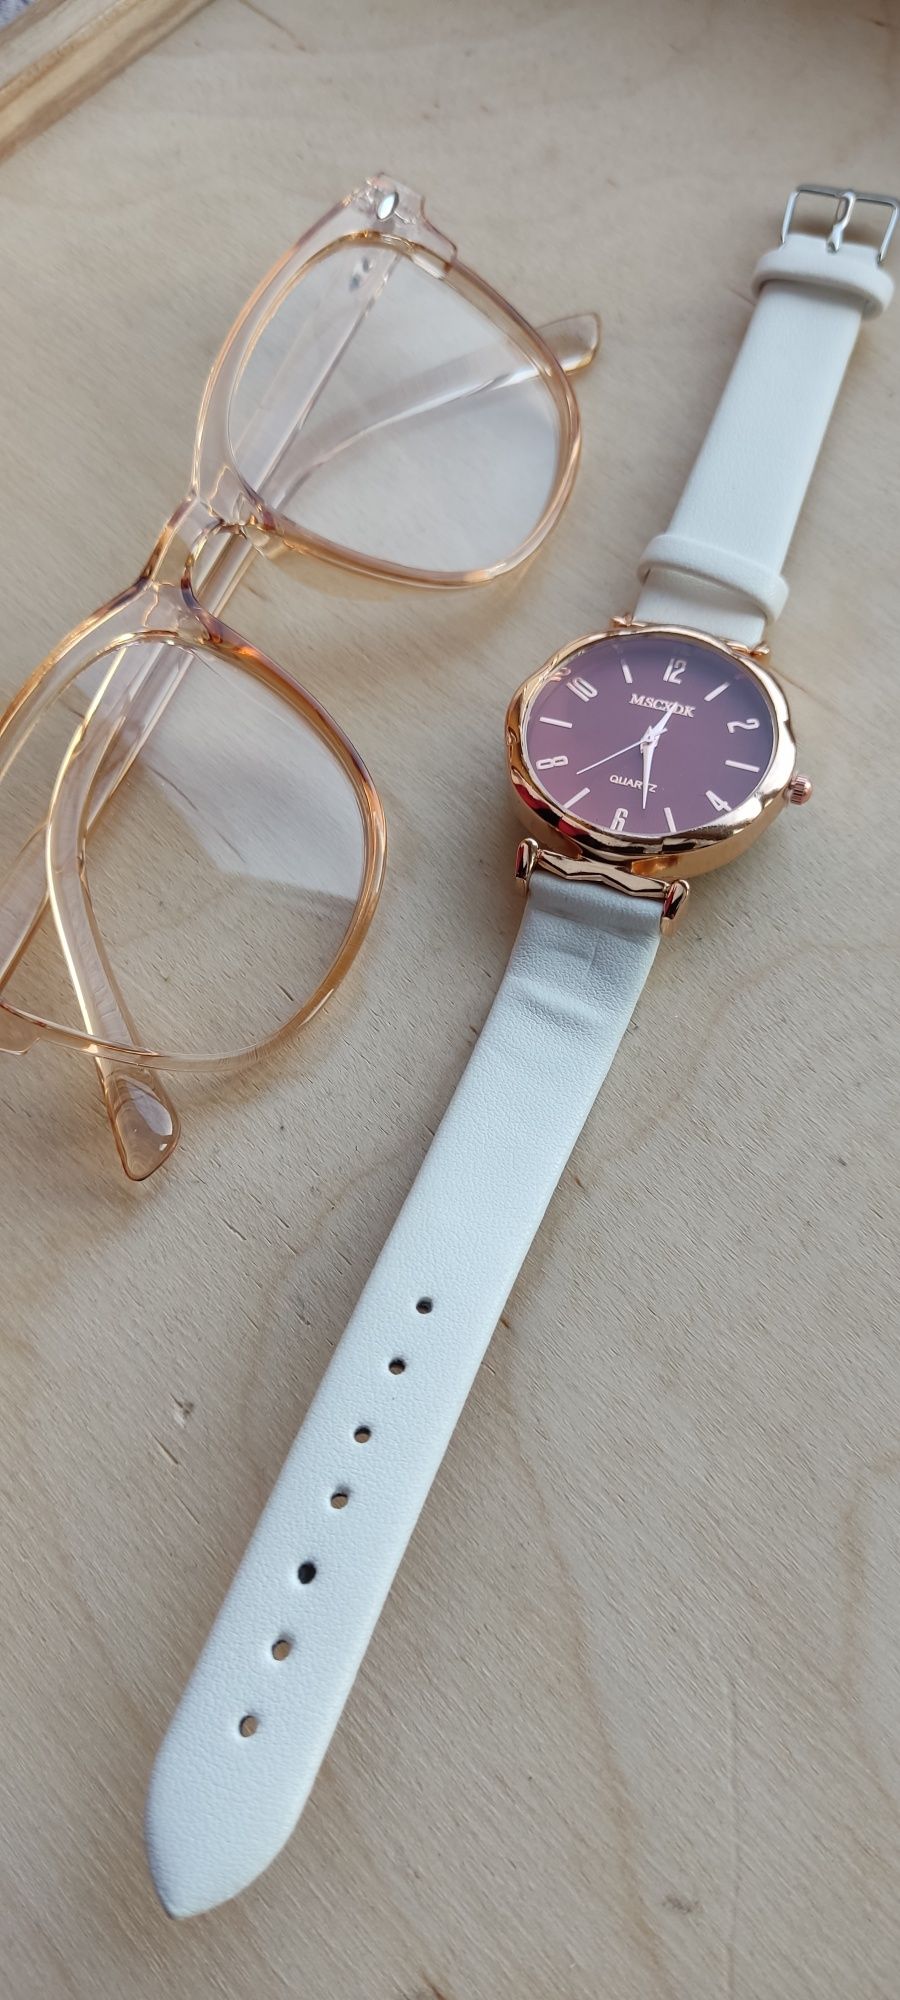 Nowy zestaw biały zegarek i okulary